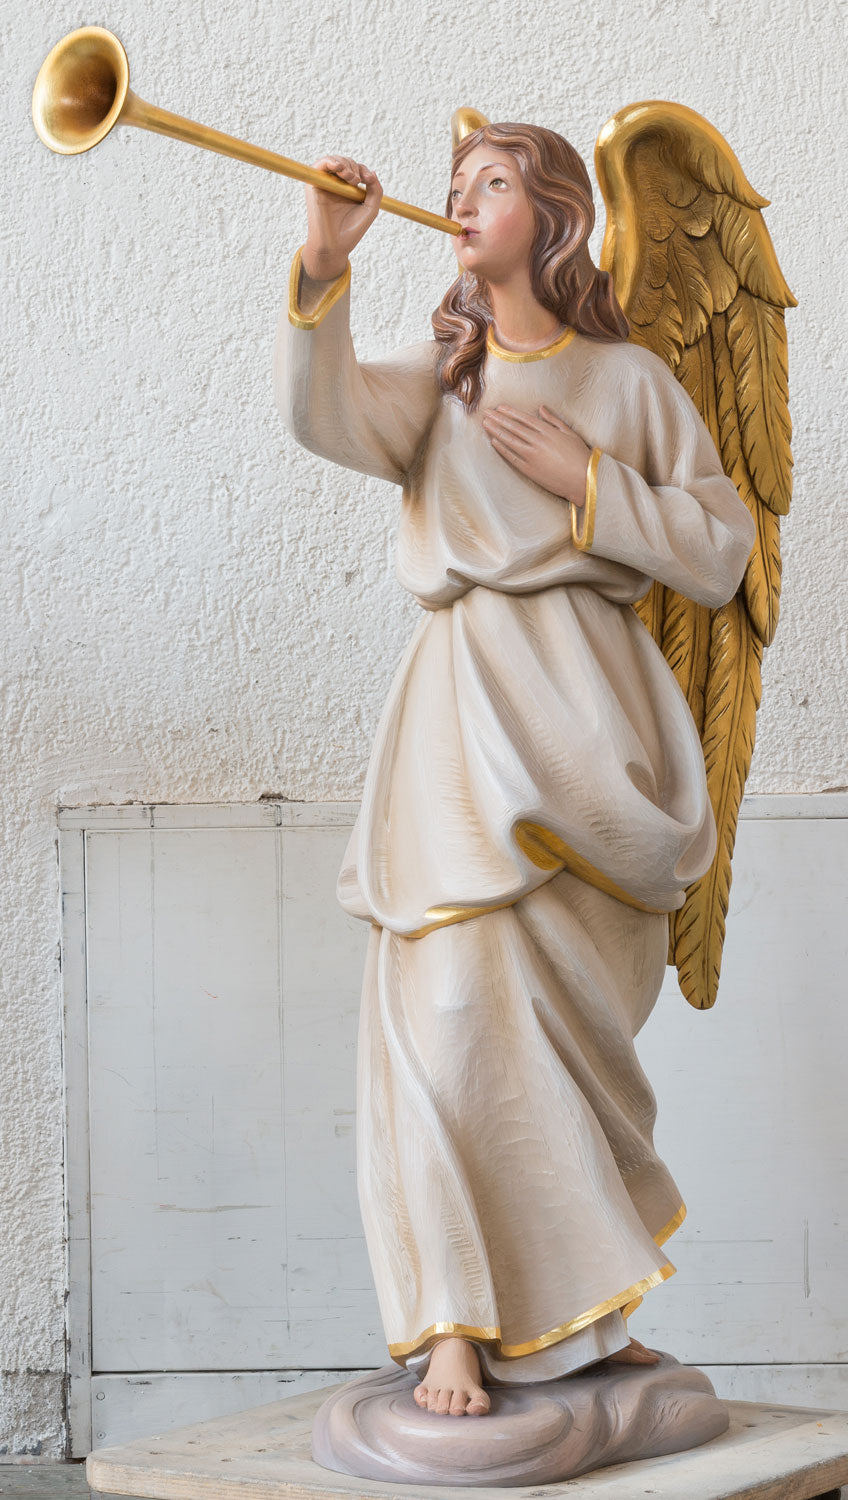 trumpeting-angels-statue-1295-2.jpg